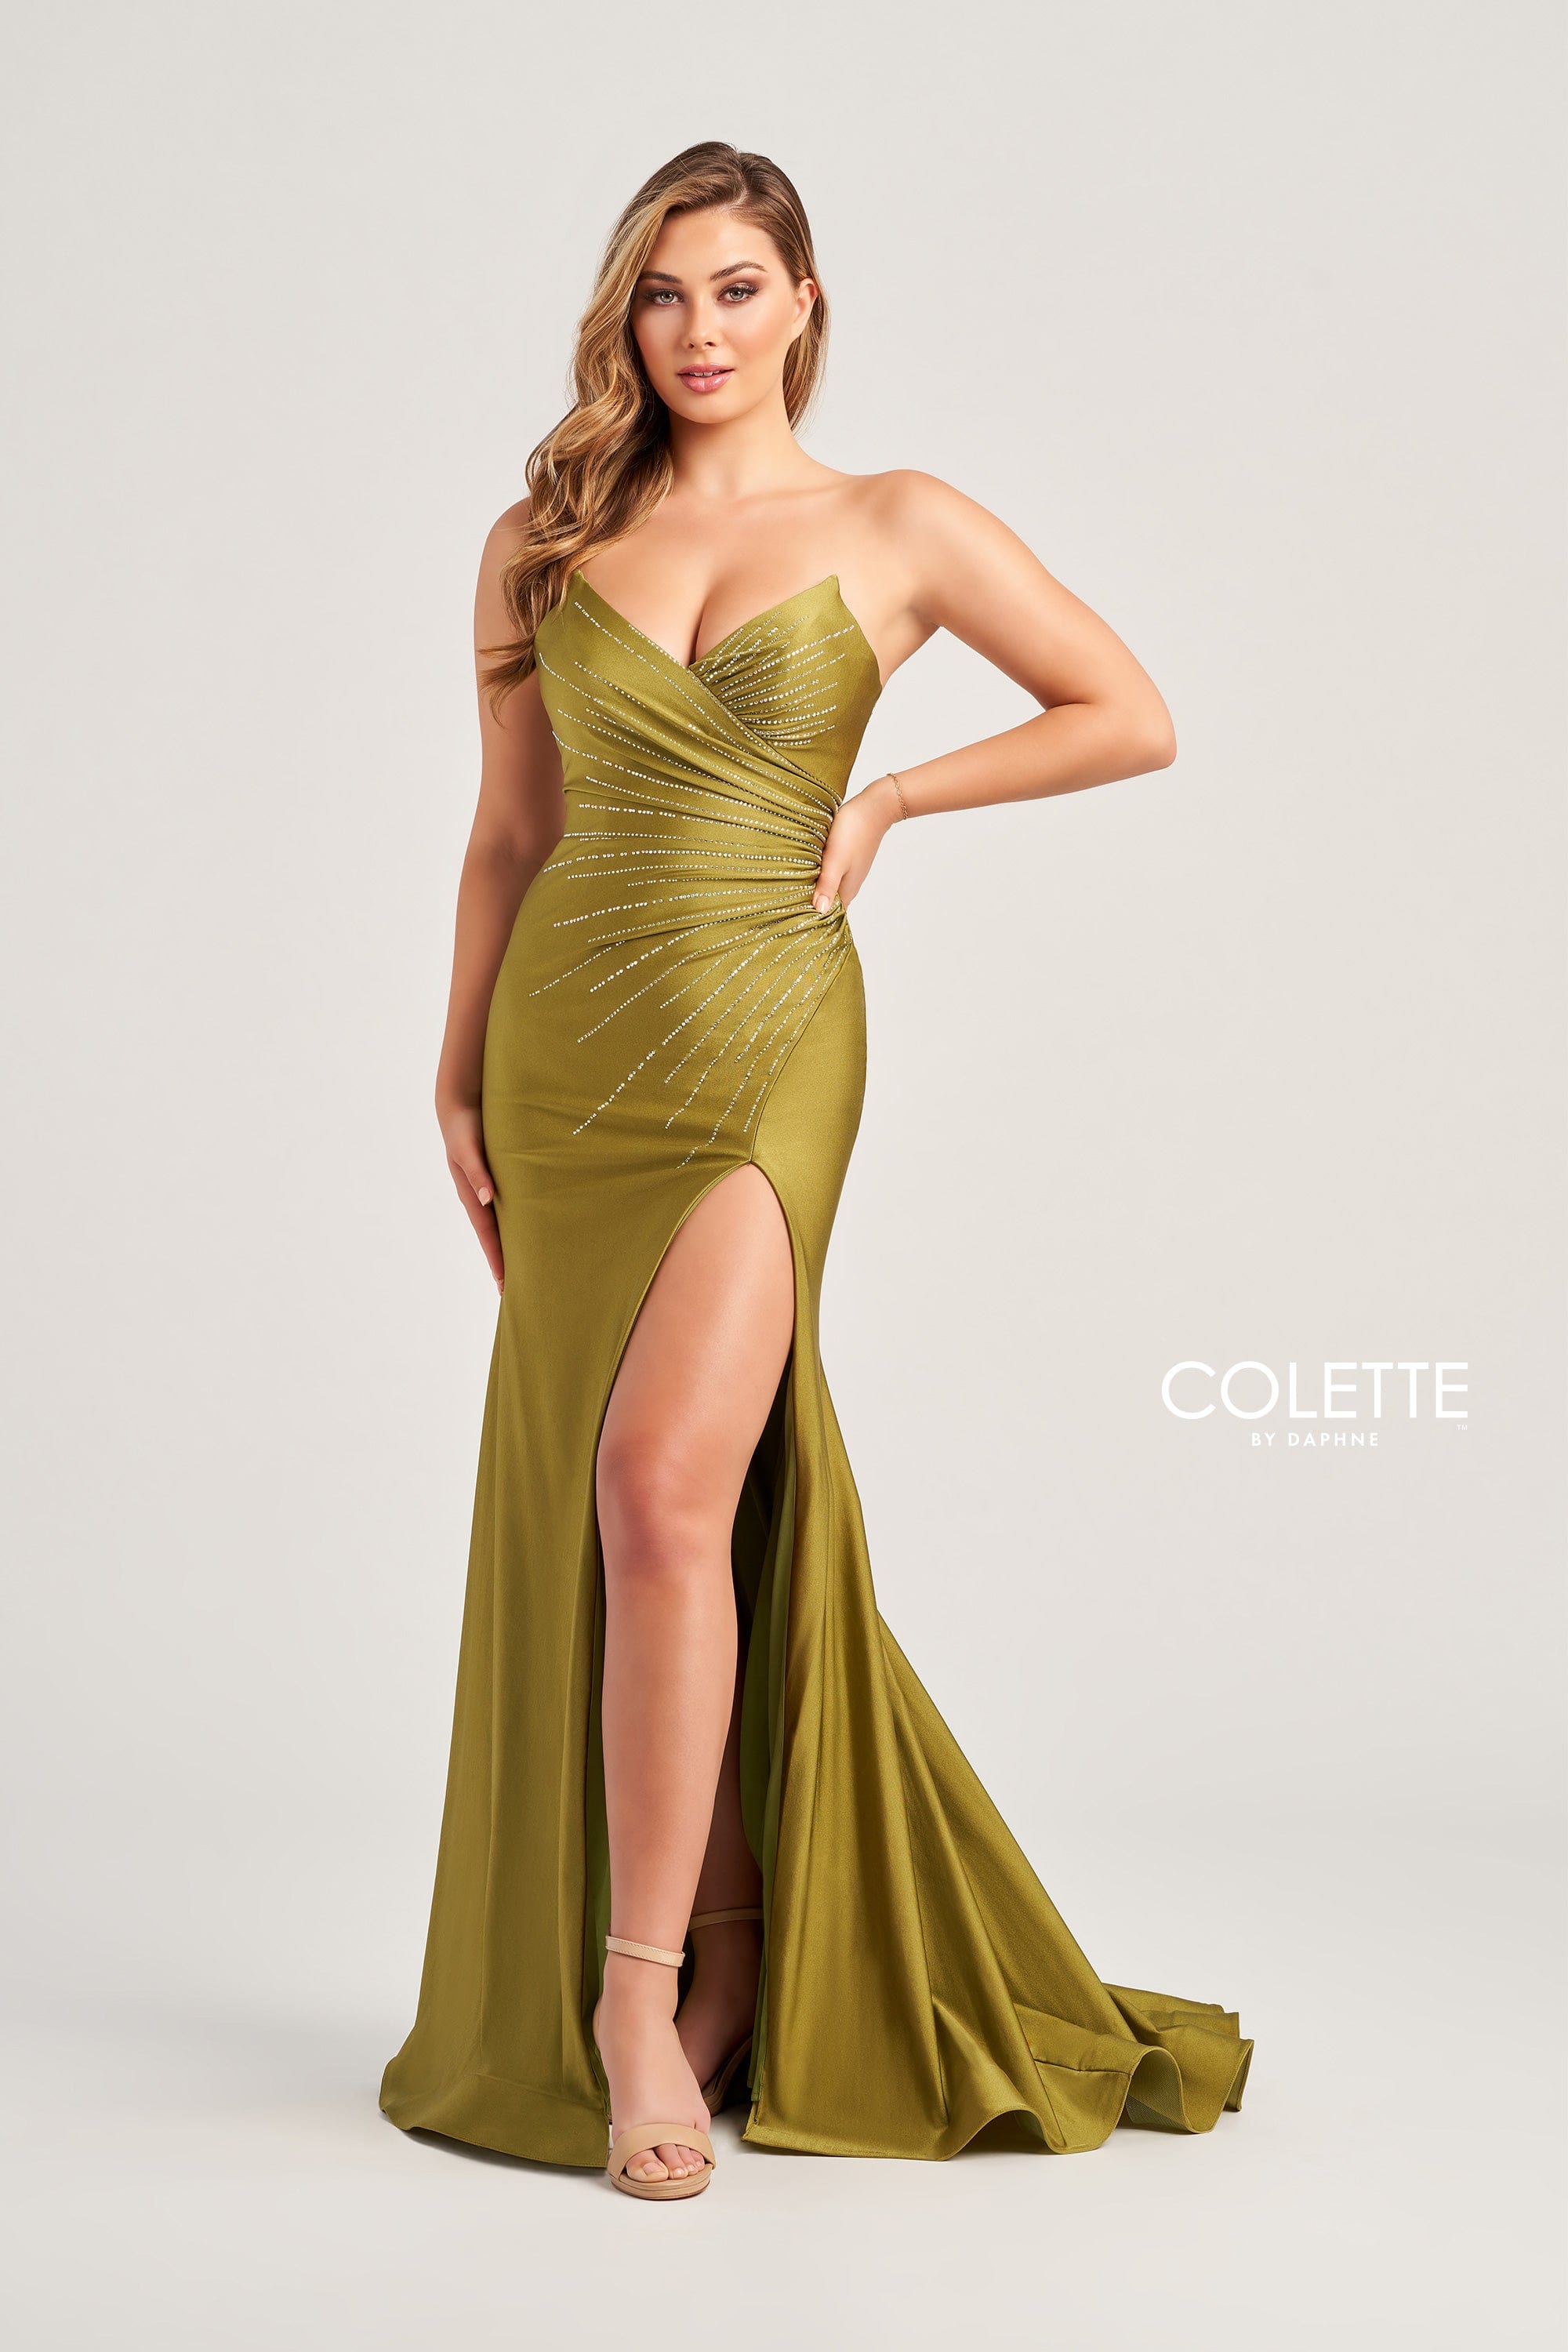 Colette for Mon Cheri Prom Colette: CL5135